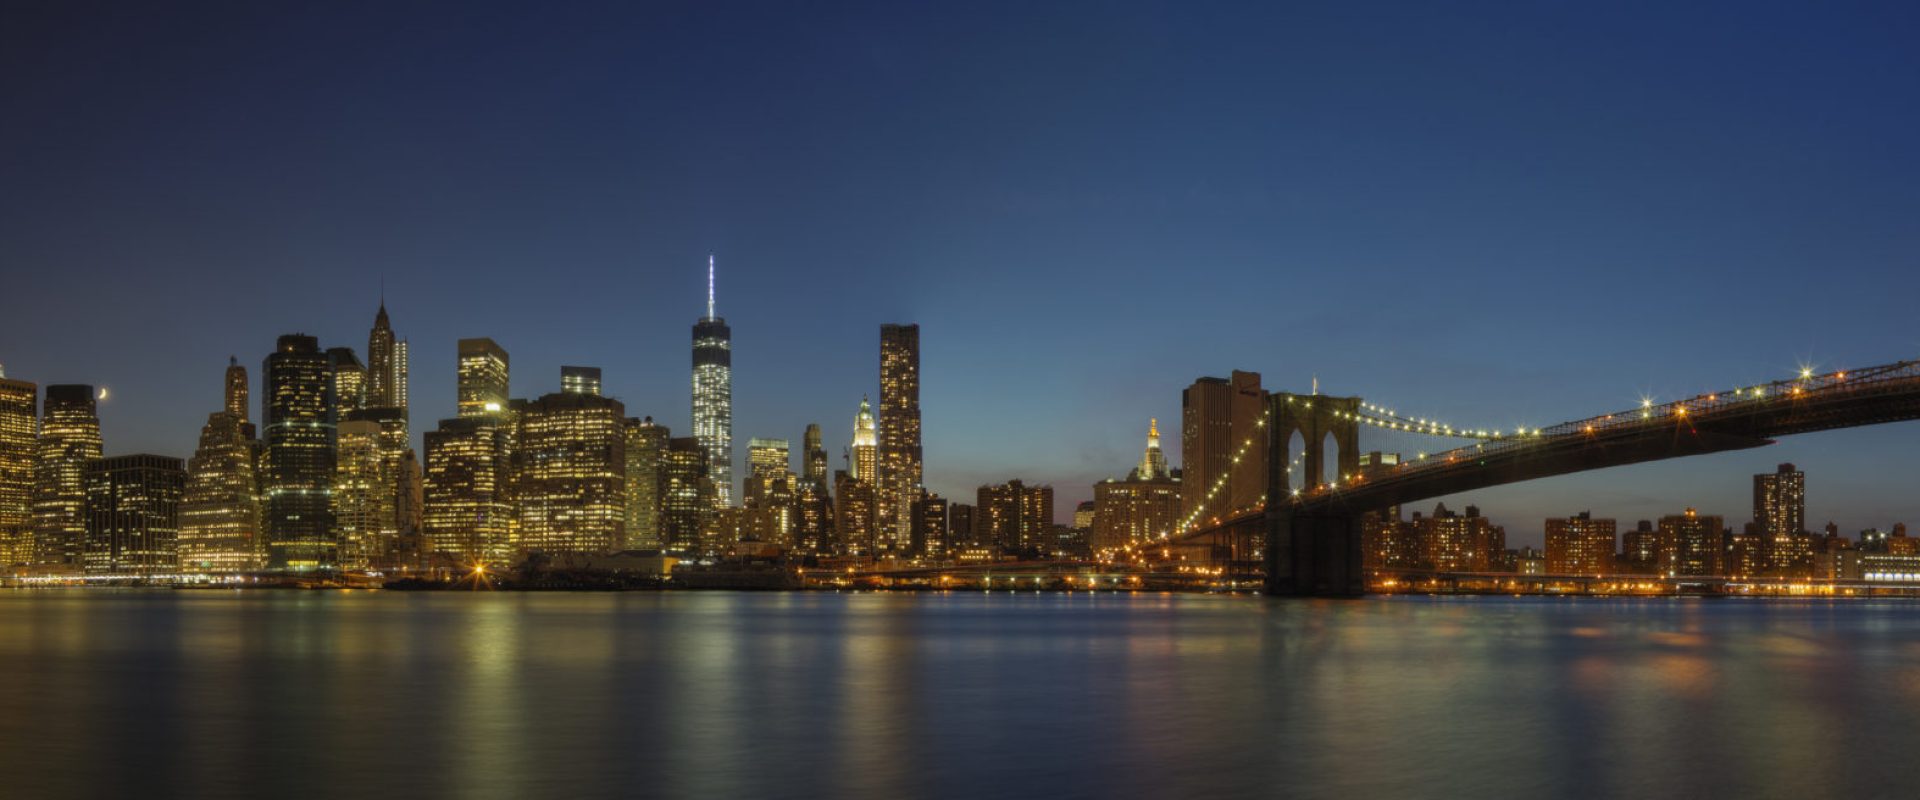 Panoramic view of New York city skyline illuminated at night, New York, United States